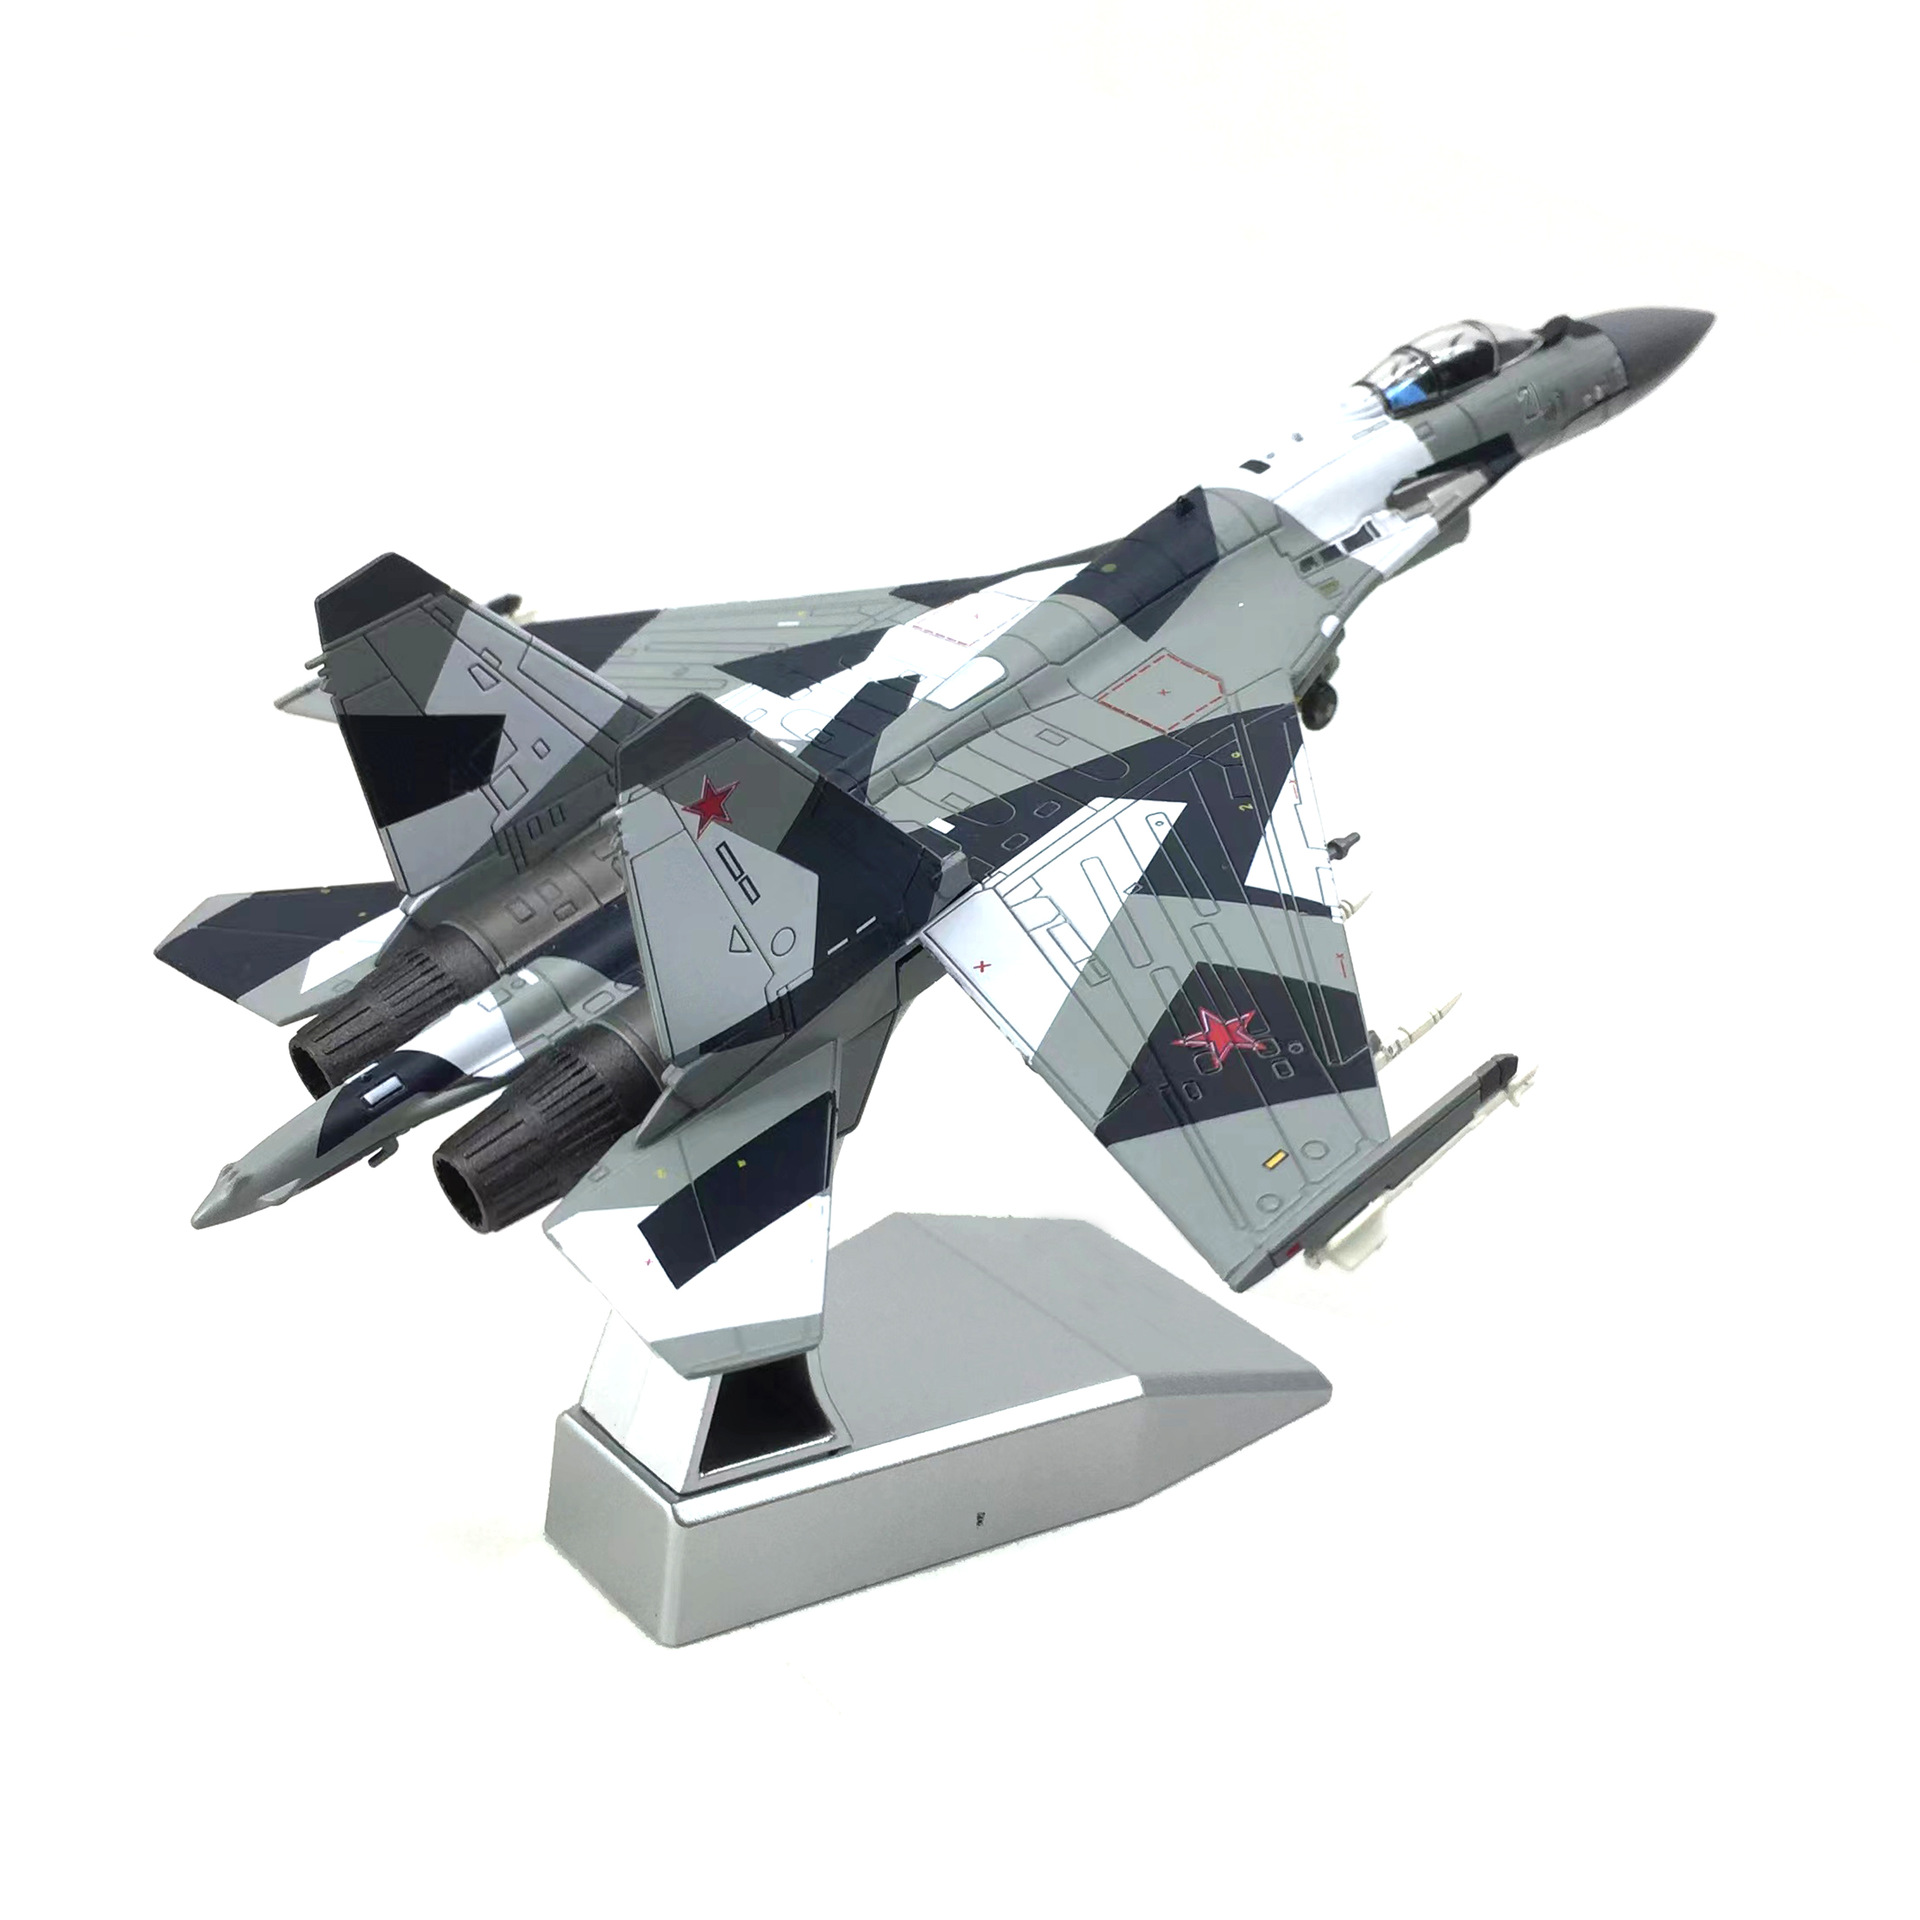  Mô hình máy bay chiến đấu Russia Su-35 BBC POCCNN No.21 tỉ lệ 1:100 Ns models MBQS019 